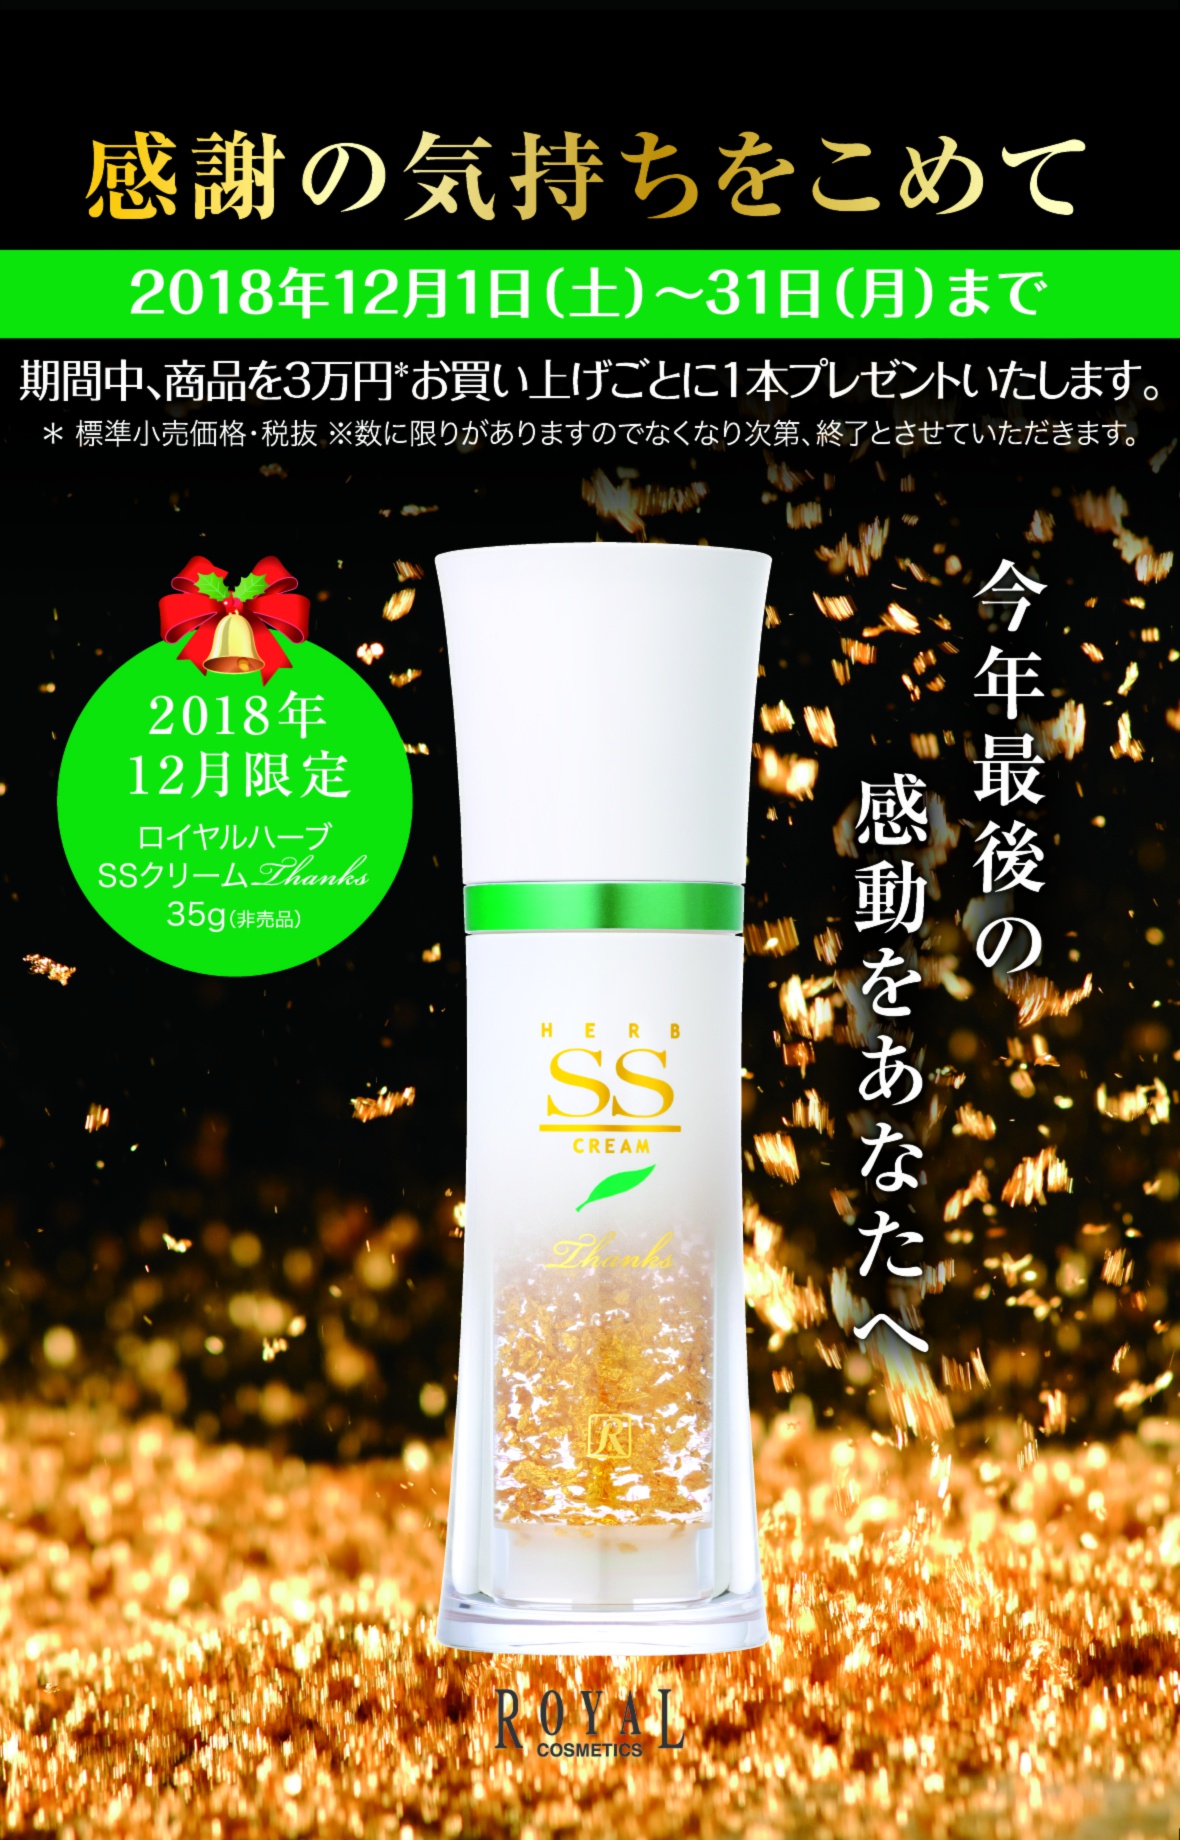 ✴️ロイヤル化粧品12月のキャンペーンのお知らせ✴️ - ロイヤル化粧品